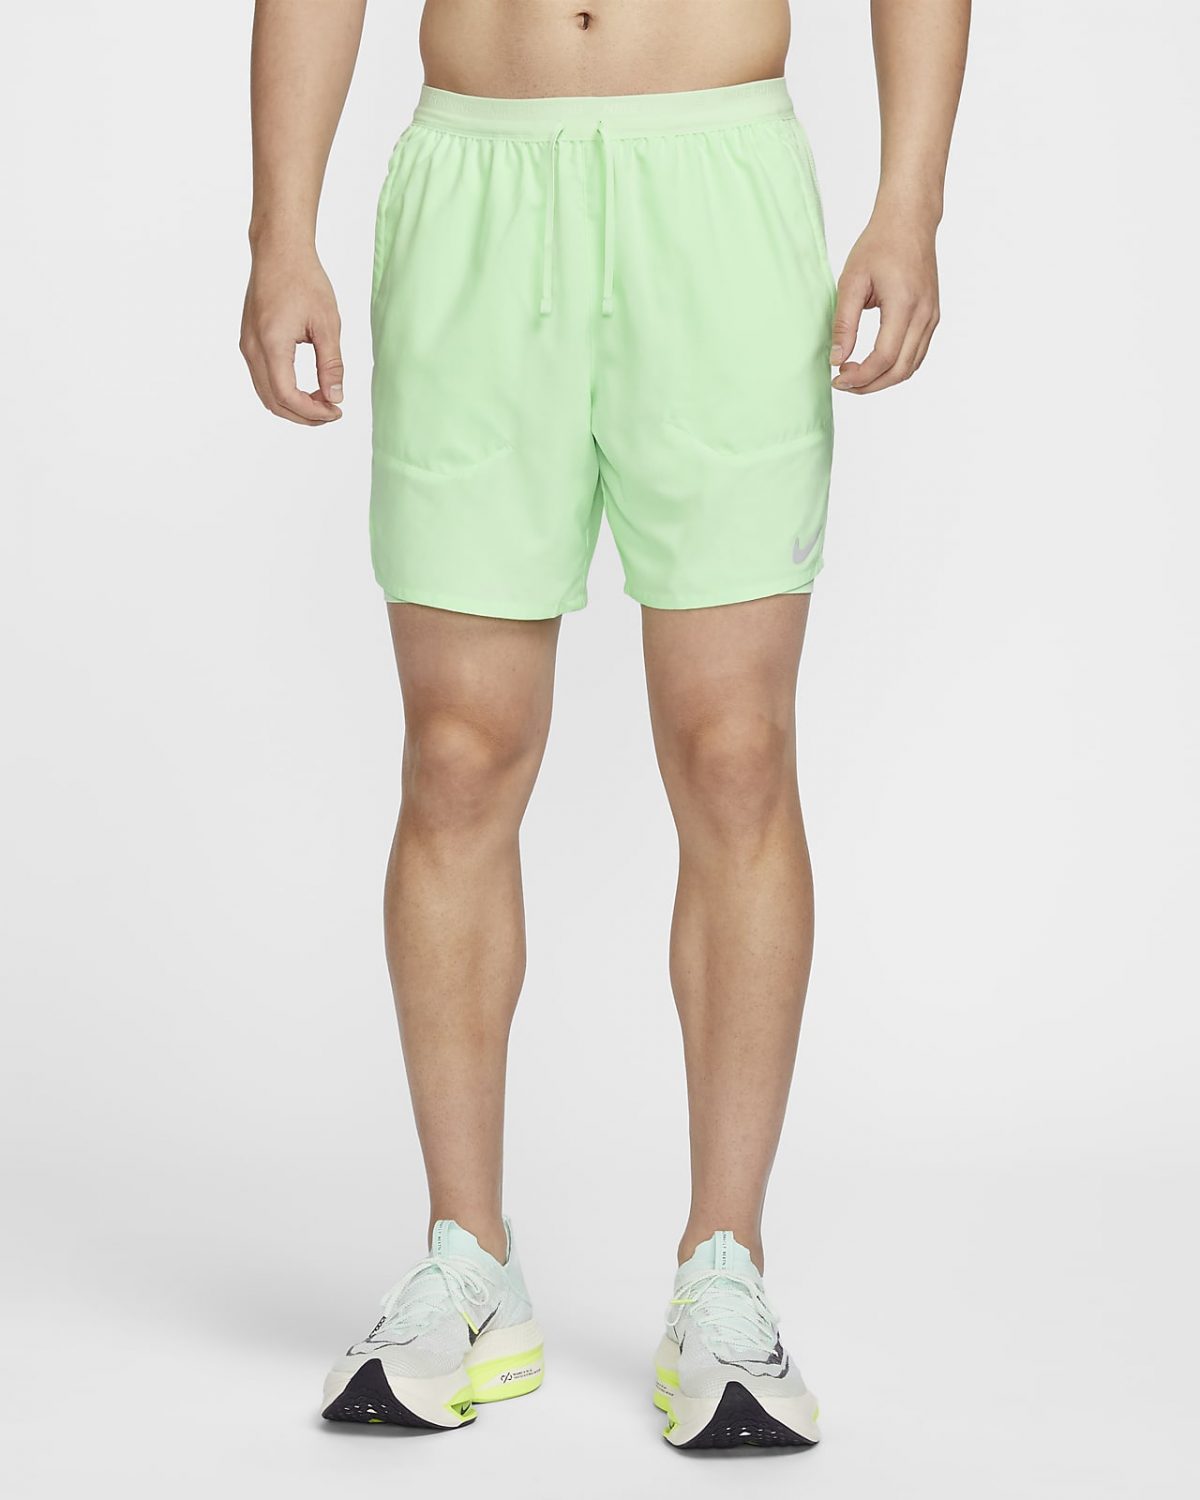 Мужские шорты Nike Dri-FIT Stride фото